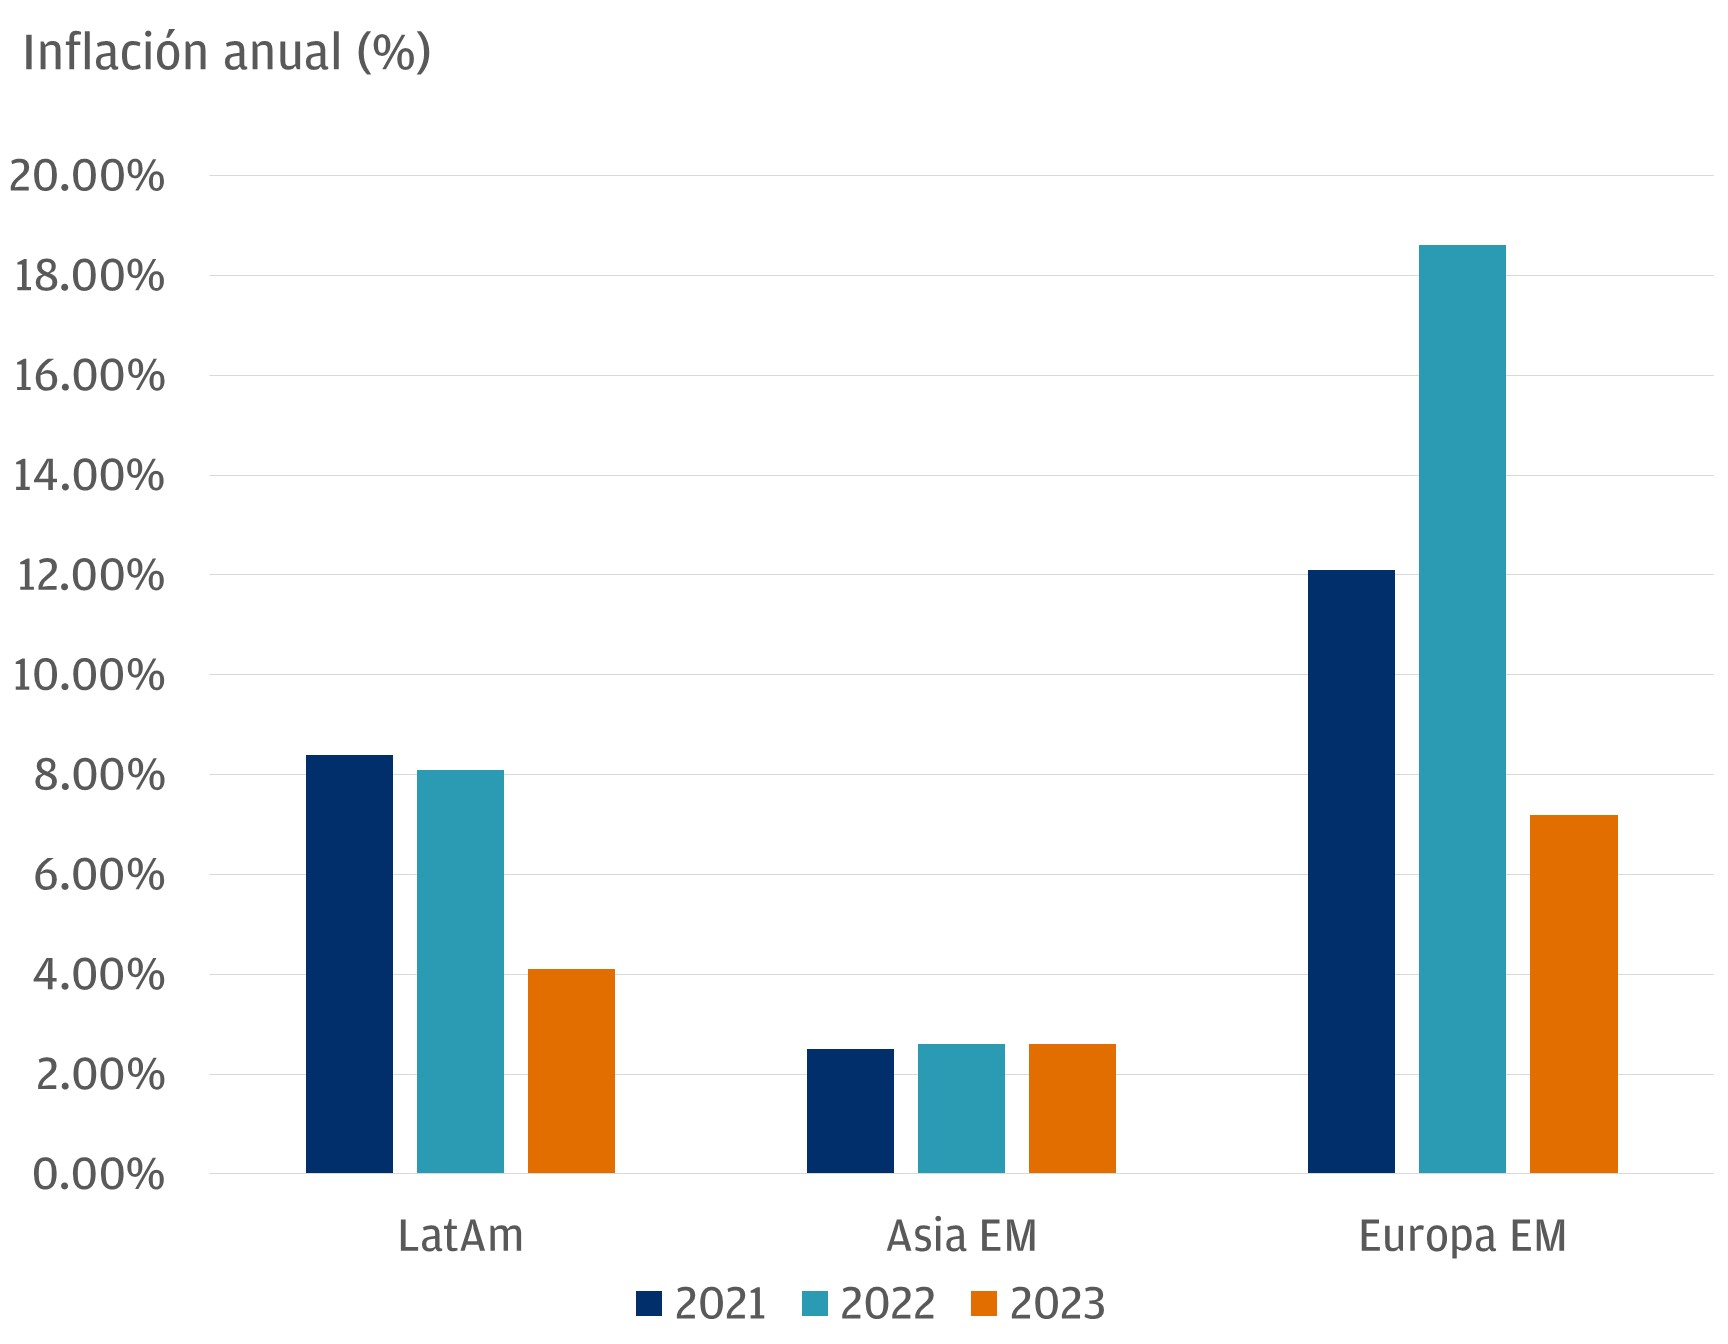 Este gráfico describe el crecimiento de la inflación anual, en términos de porcentaje, de tres regiones: América Latina EM, Asia EM y Europa EM, para los años 2021, 2022 y 2023.